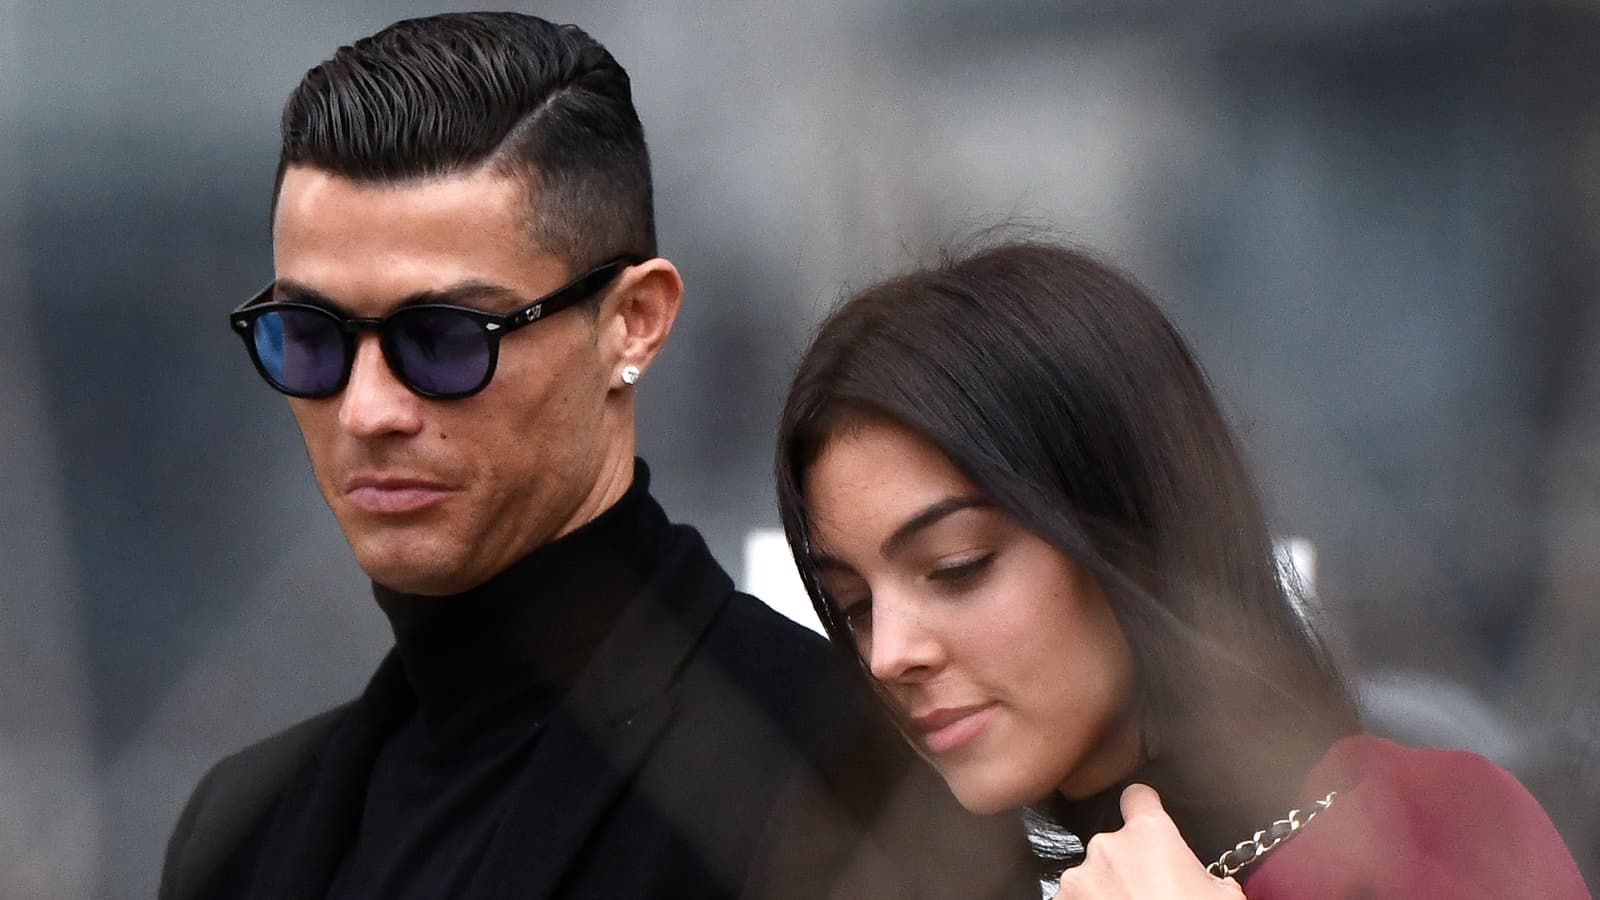 Des investisseurs réclament plus d’un milliard de dollars à Cristiano Ronaldo